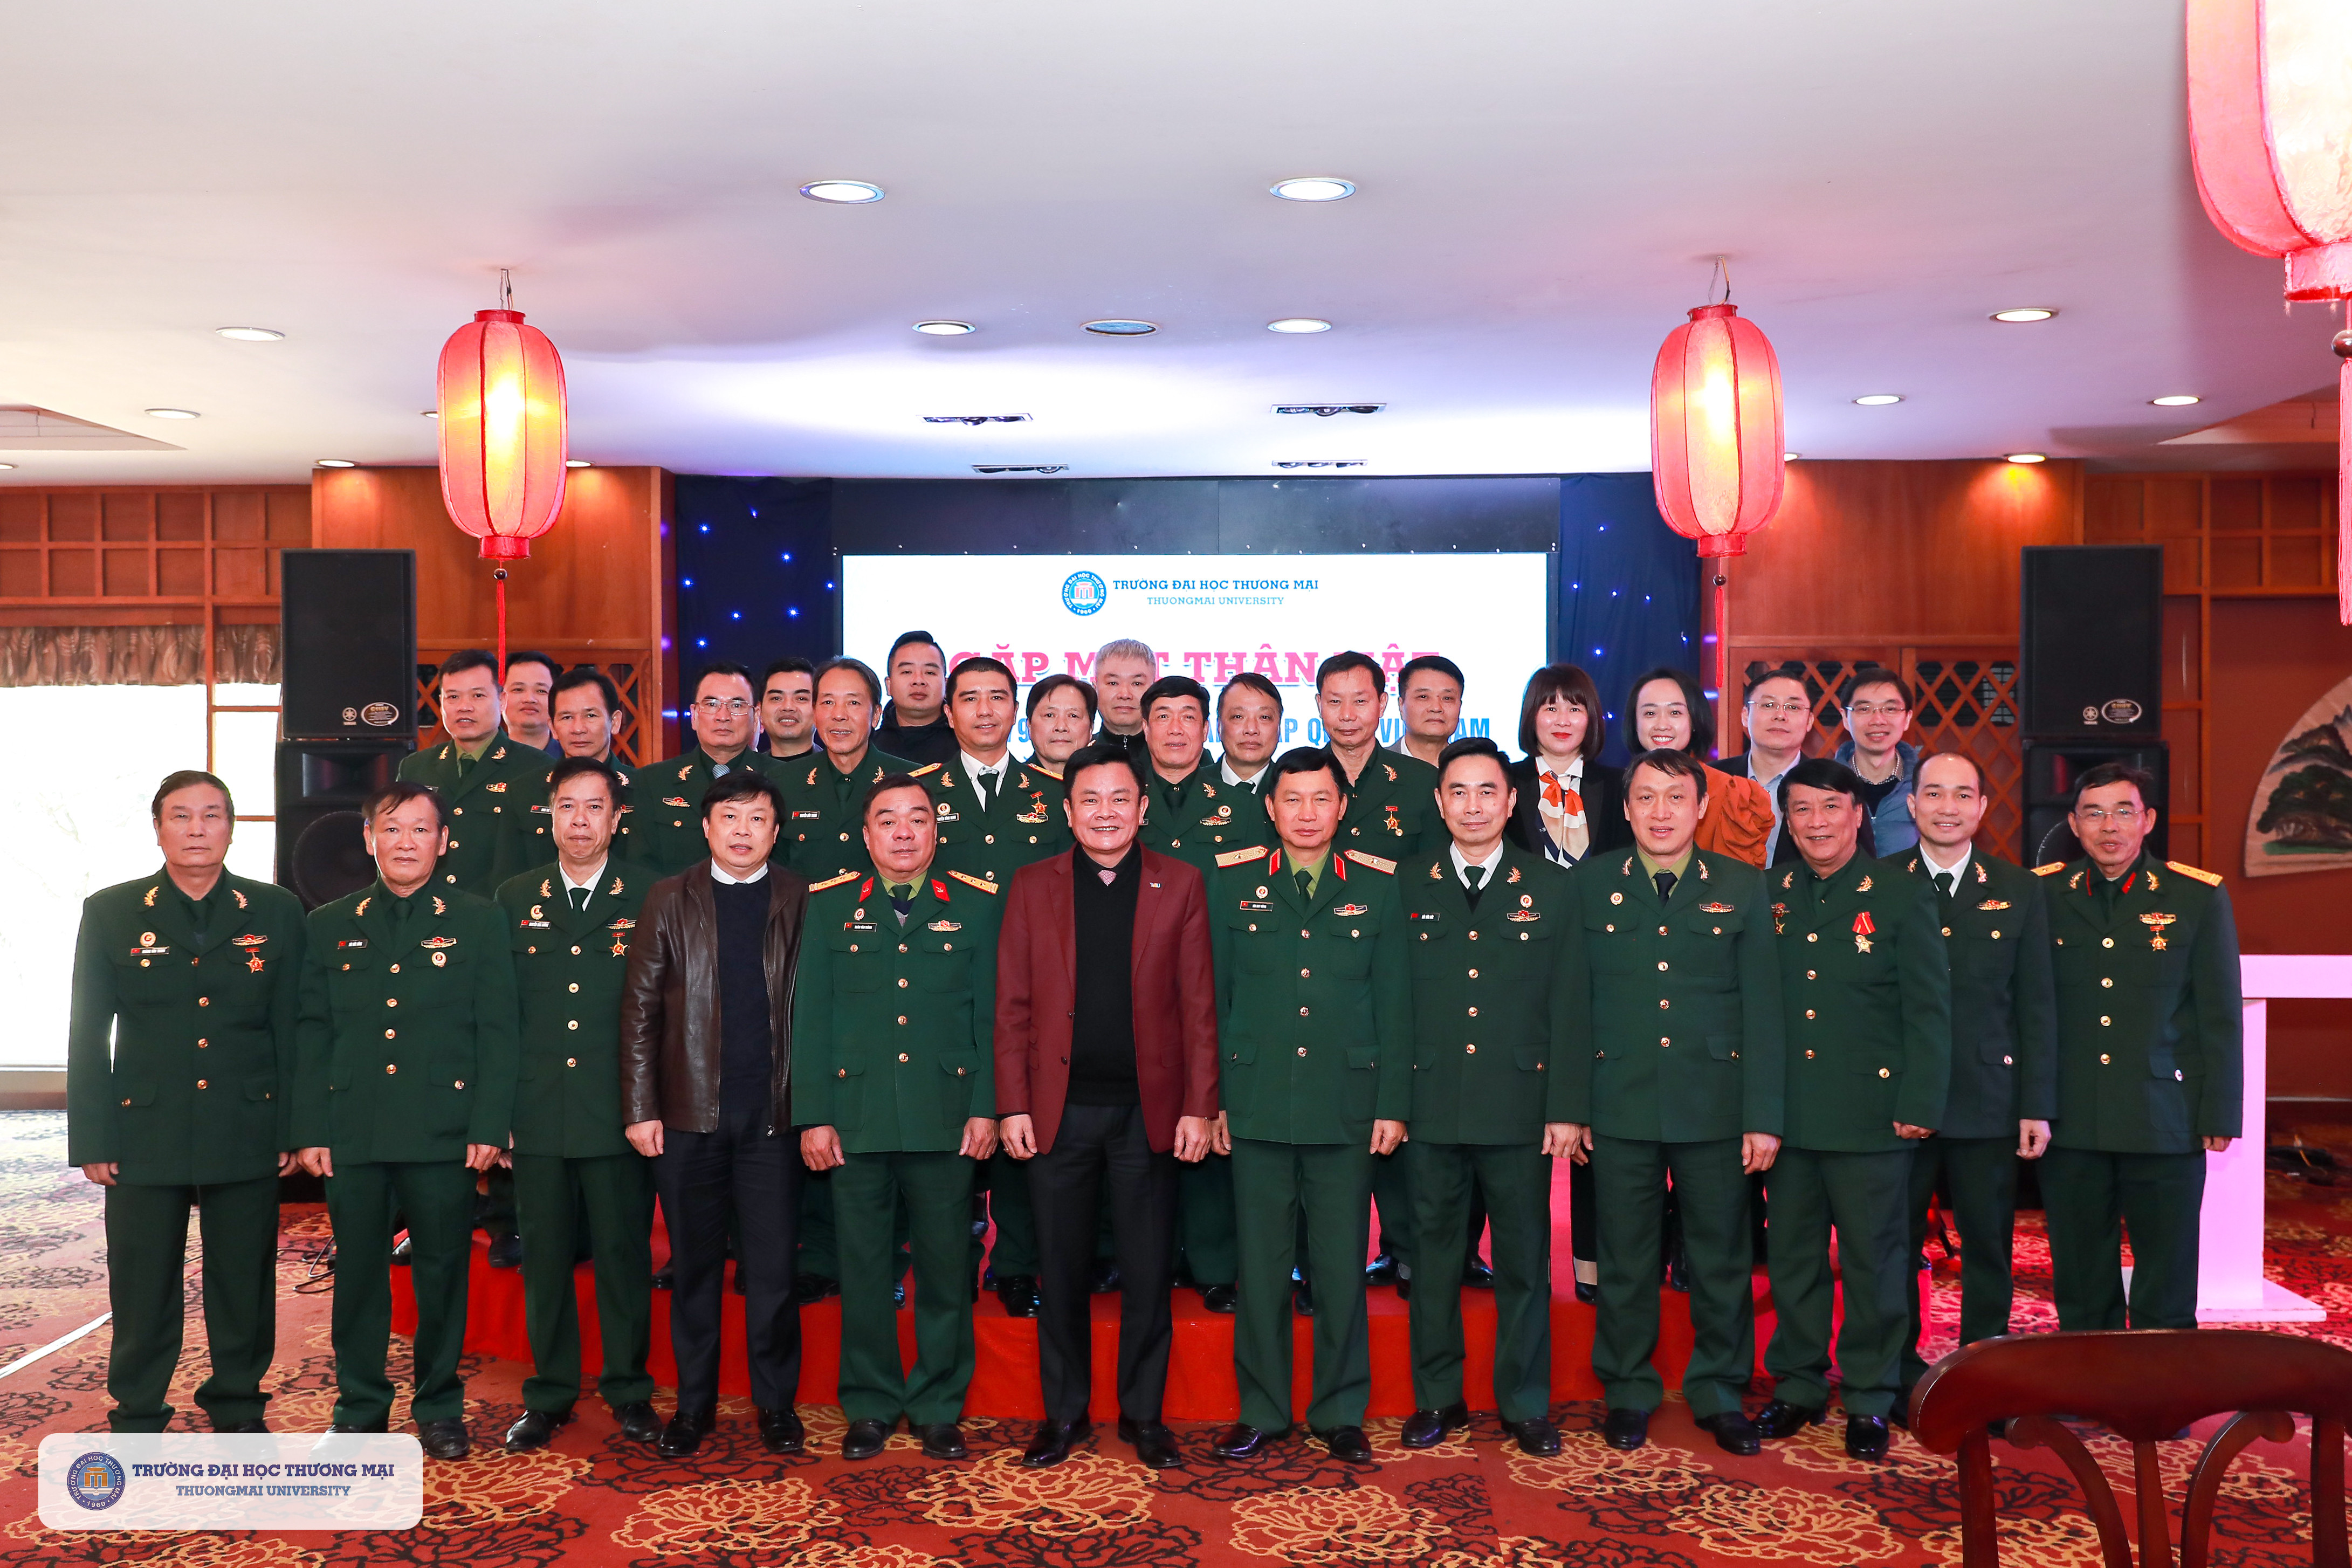 Trường Đại học Thương mại tổ chức gặp mặt thân mật các đồng chí cựu chiến binh, cựu quân nhân, sỹ quan dự bị chào mừng Kỷ niệm 79 năm Ngày thành lập Quân đội Nhân dân Việt Nam (22/12/1944 - 22/12/2023) và 34 năm ngày Hội Quốc phòng toàn dân (22/12/1989 -